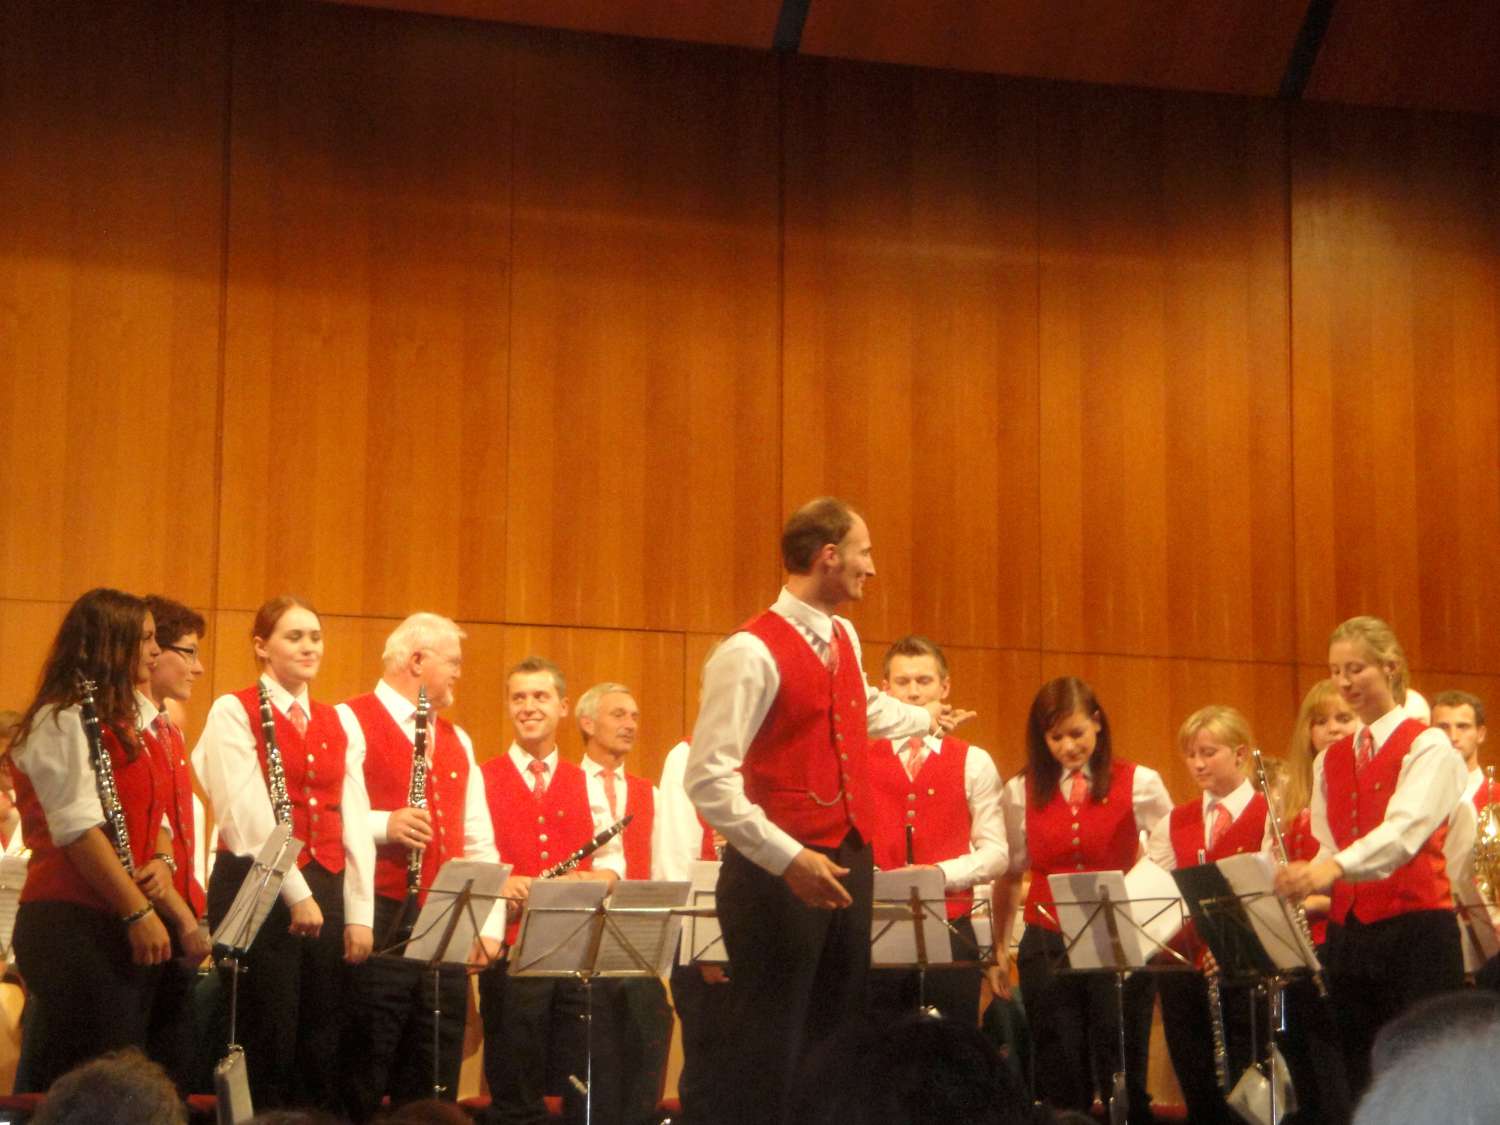 Kurkonzert 2012 in Bad Schallerbach